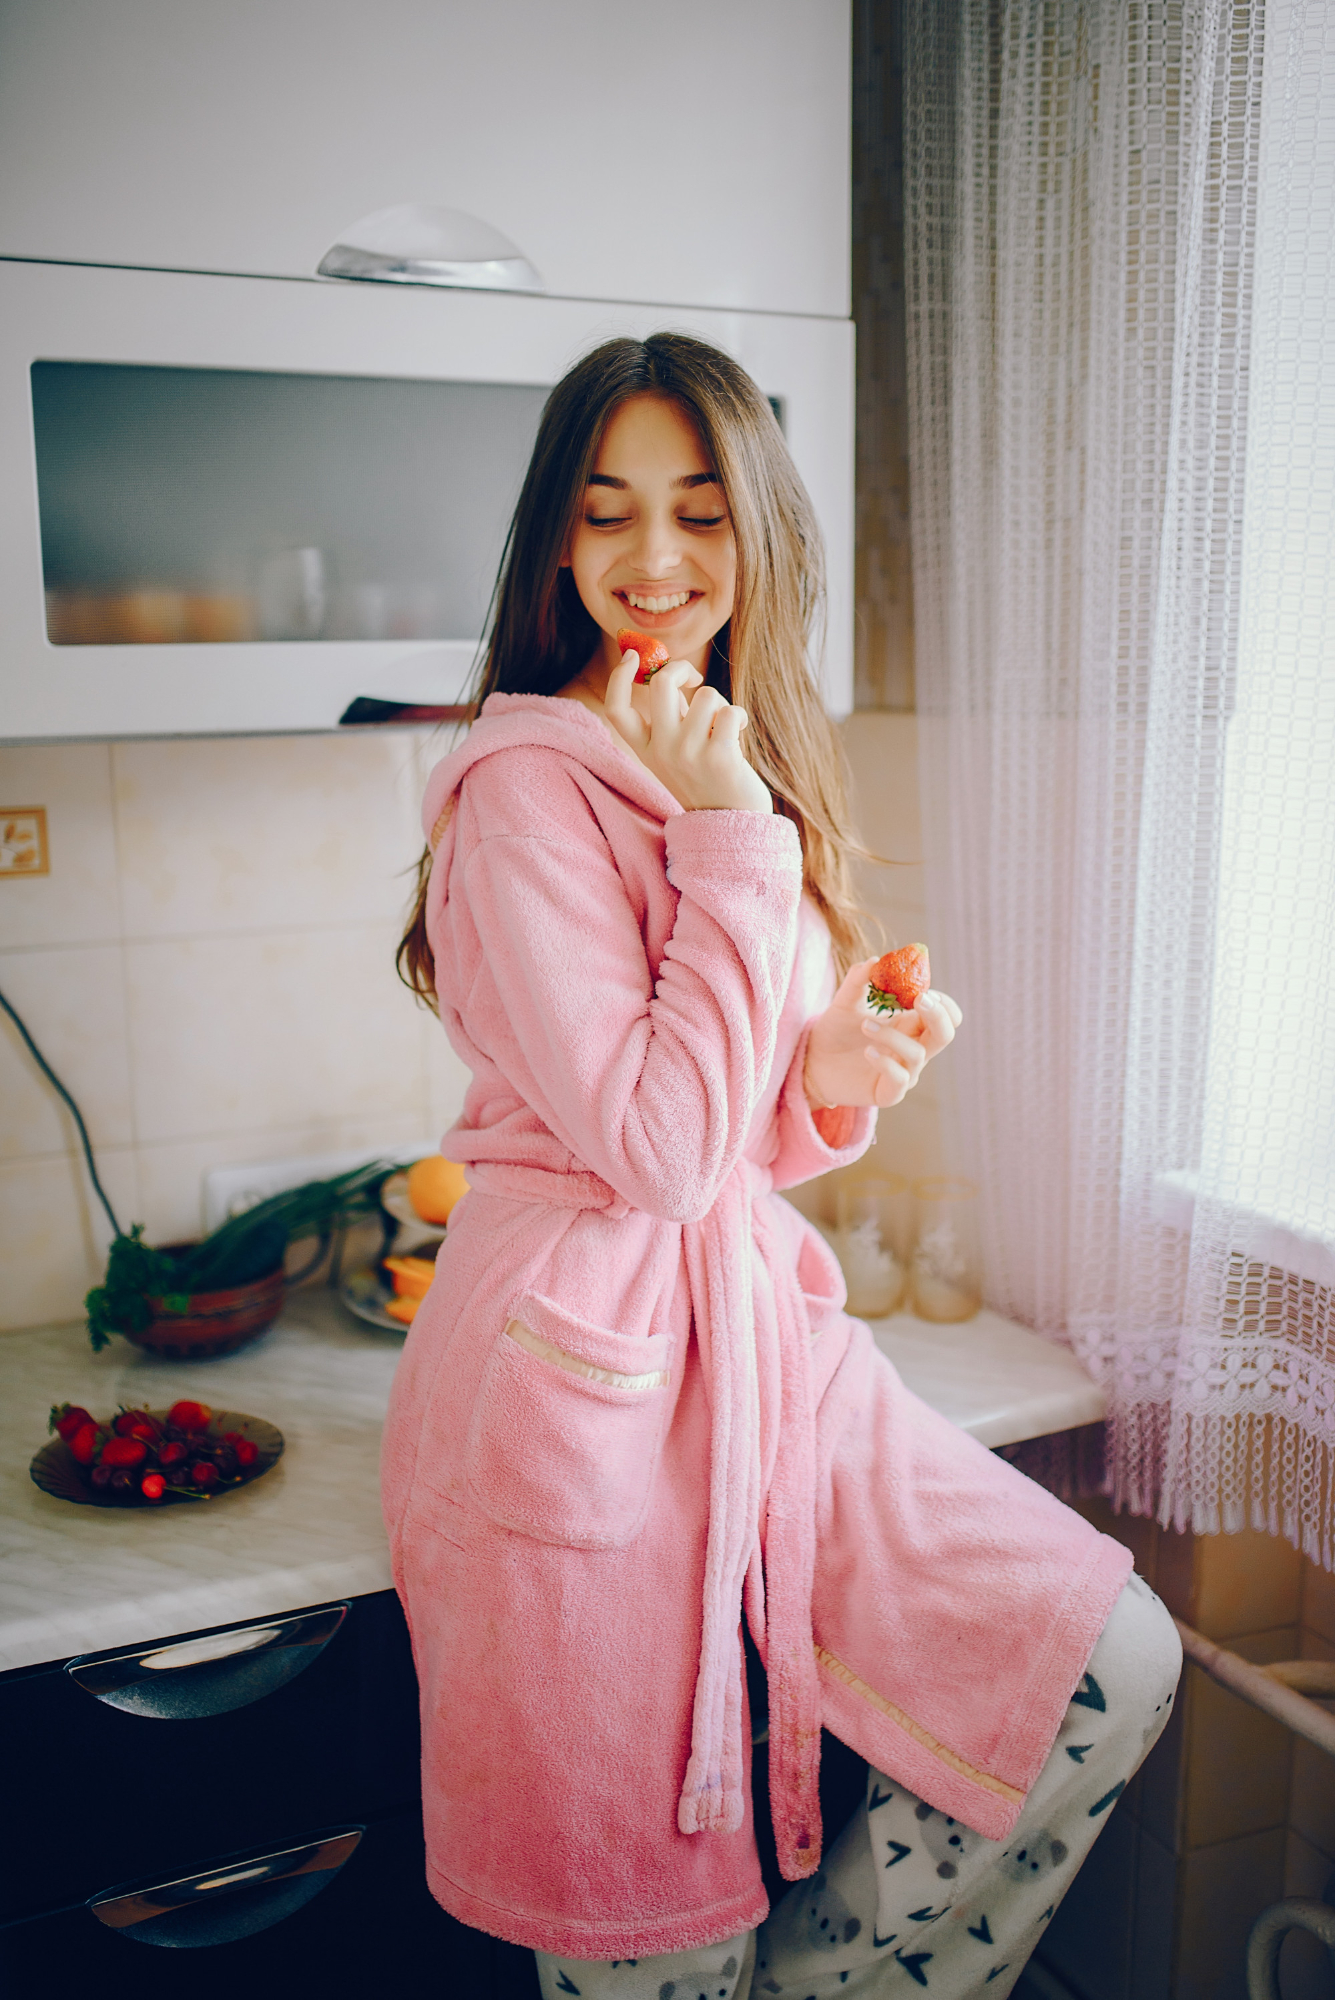 Una mujer sonriendo vestida con una bata y un pijama | Fuente: Freepik